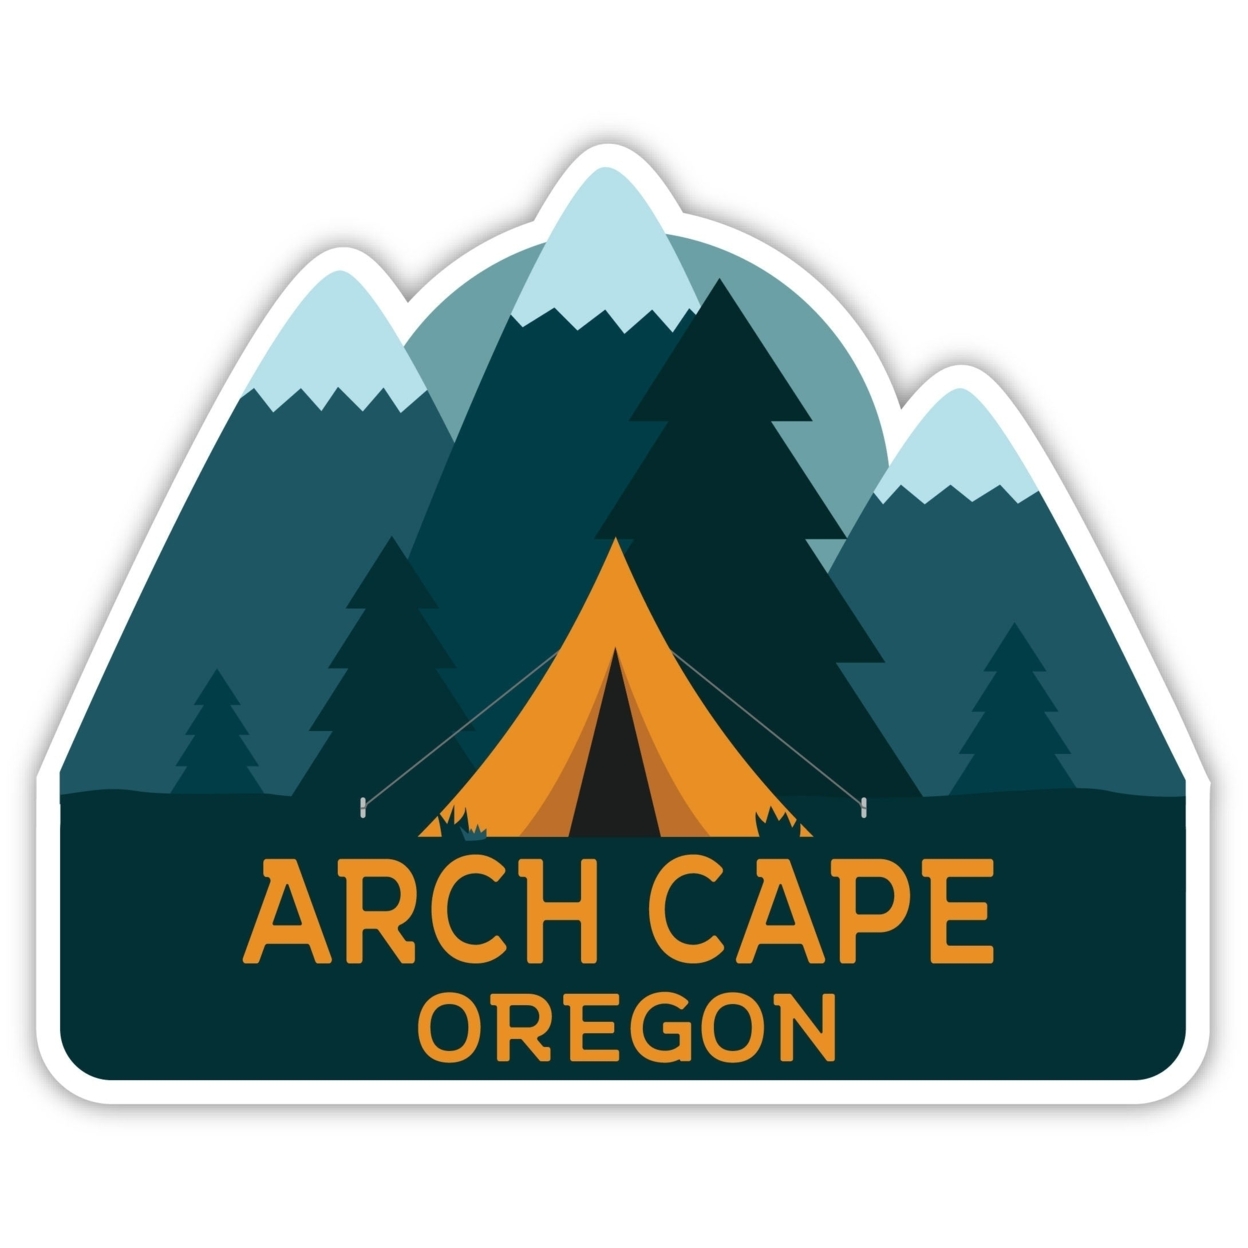 Arch Cape Oregon Souvenir Decorative Stickers (Choose Theme And Size) - Single Unit, 10-Inch, Tent